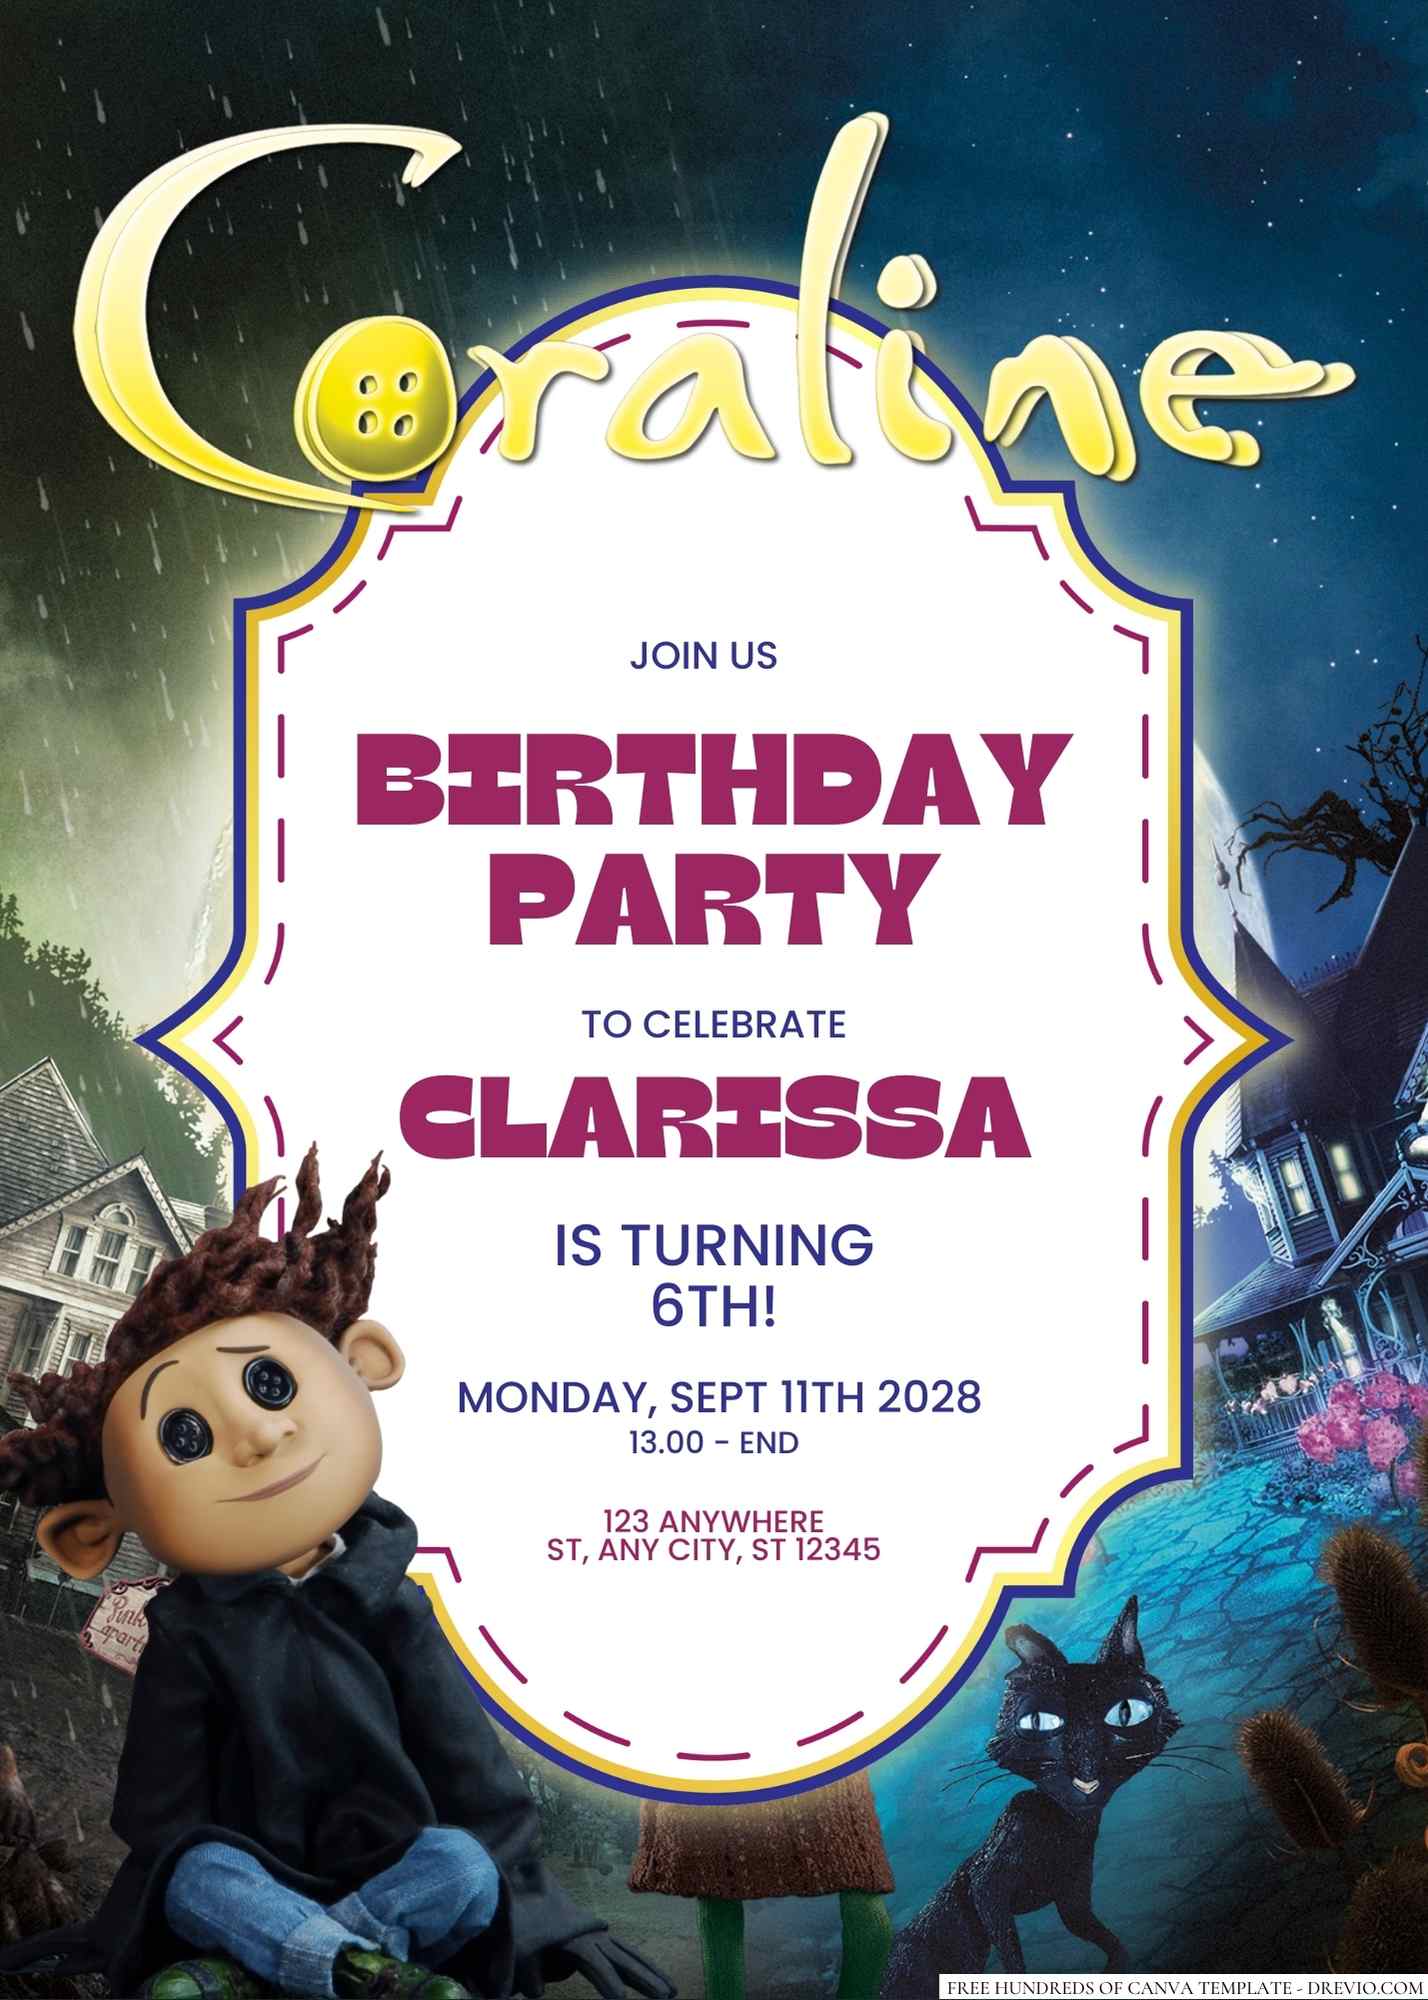 21 Coraline Birthday Ideas  coraline, birthday, coraline jones